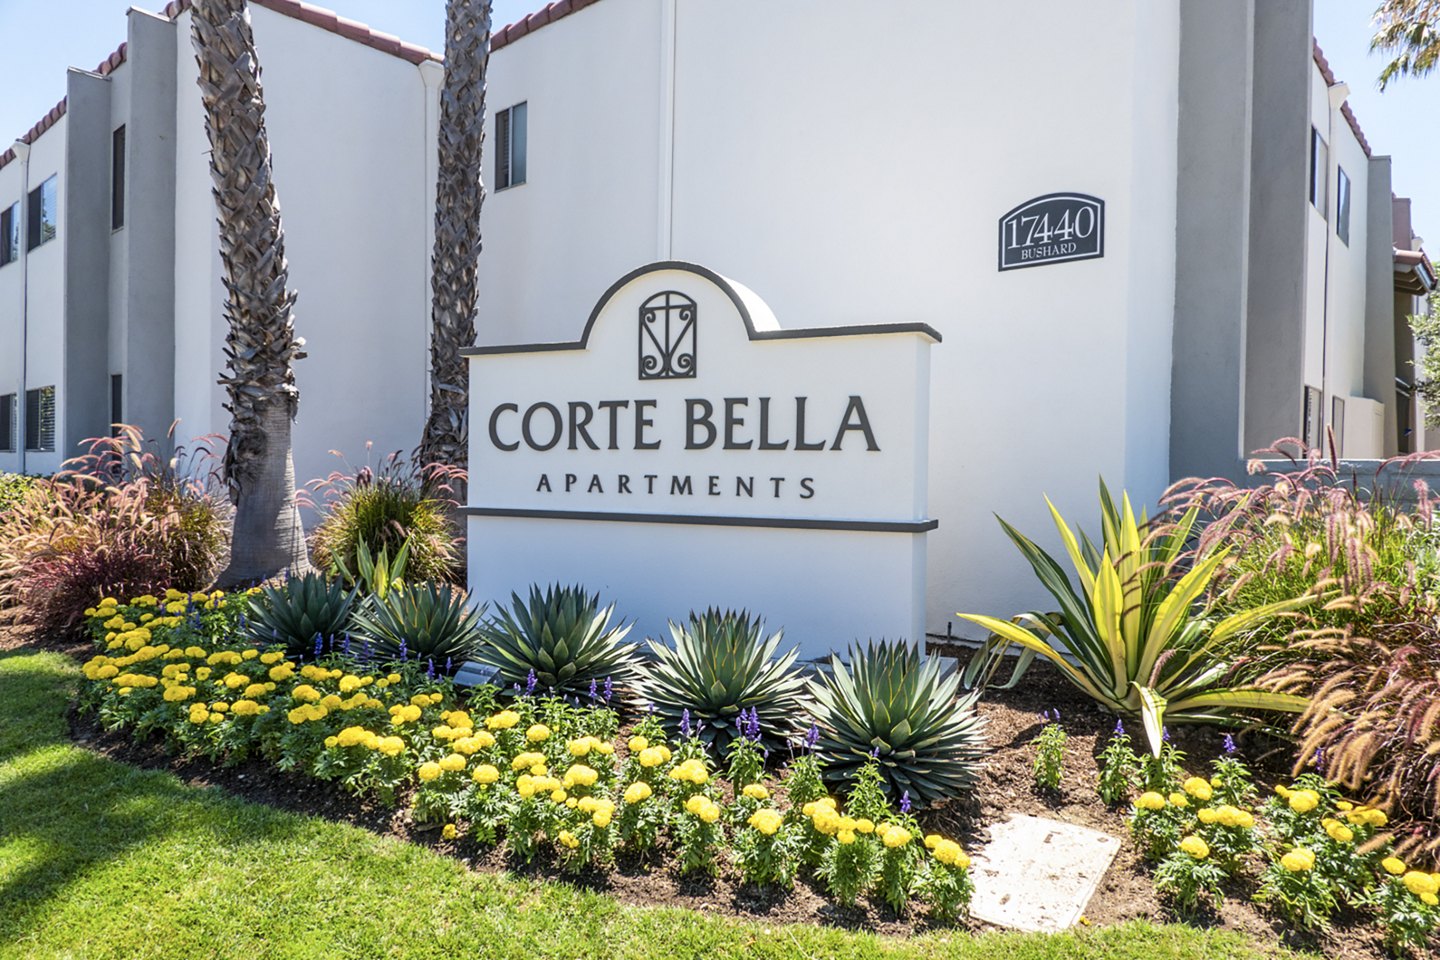 Corte Bella Apartments in Fountain Valley | Greystar